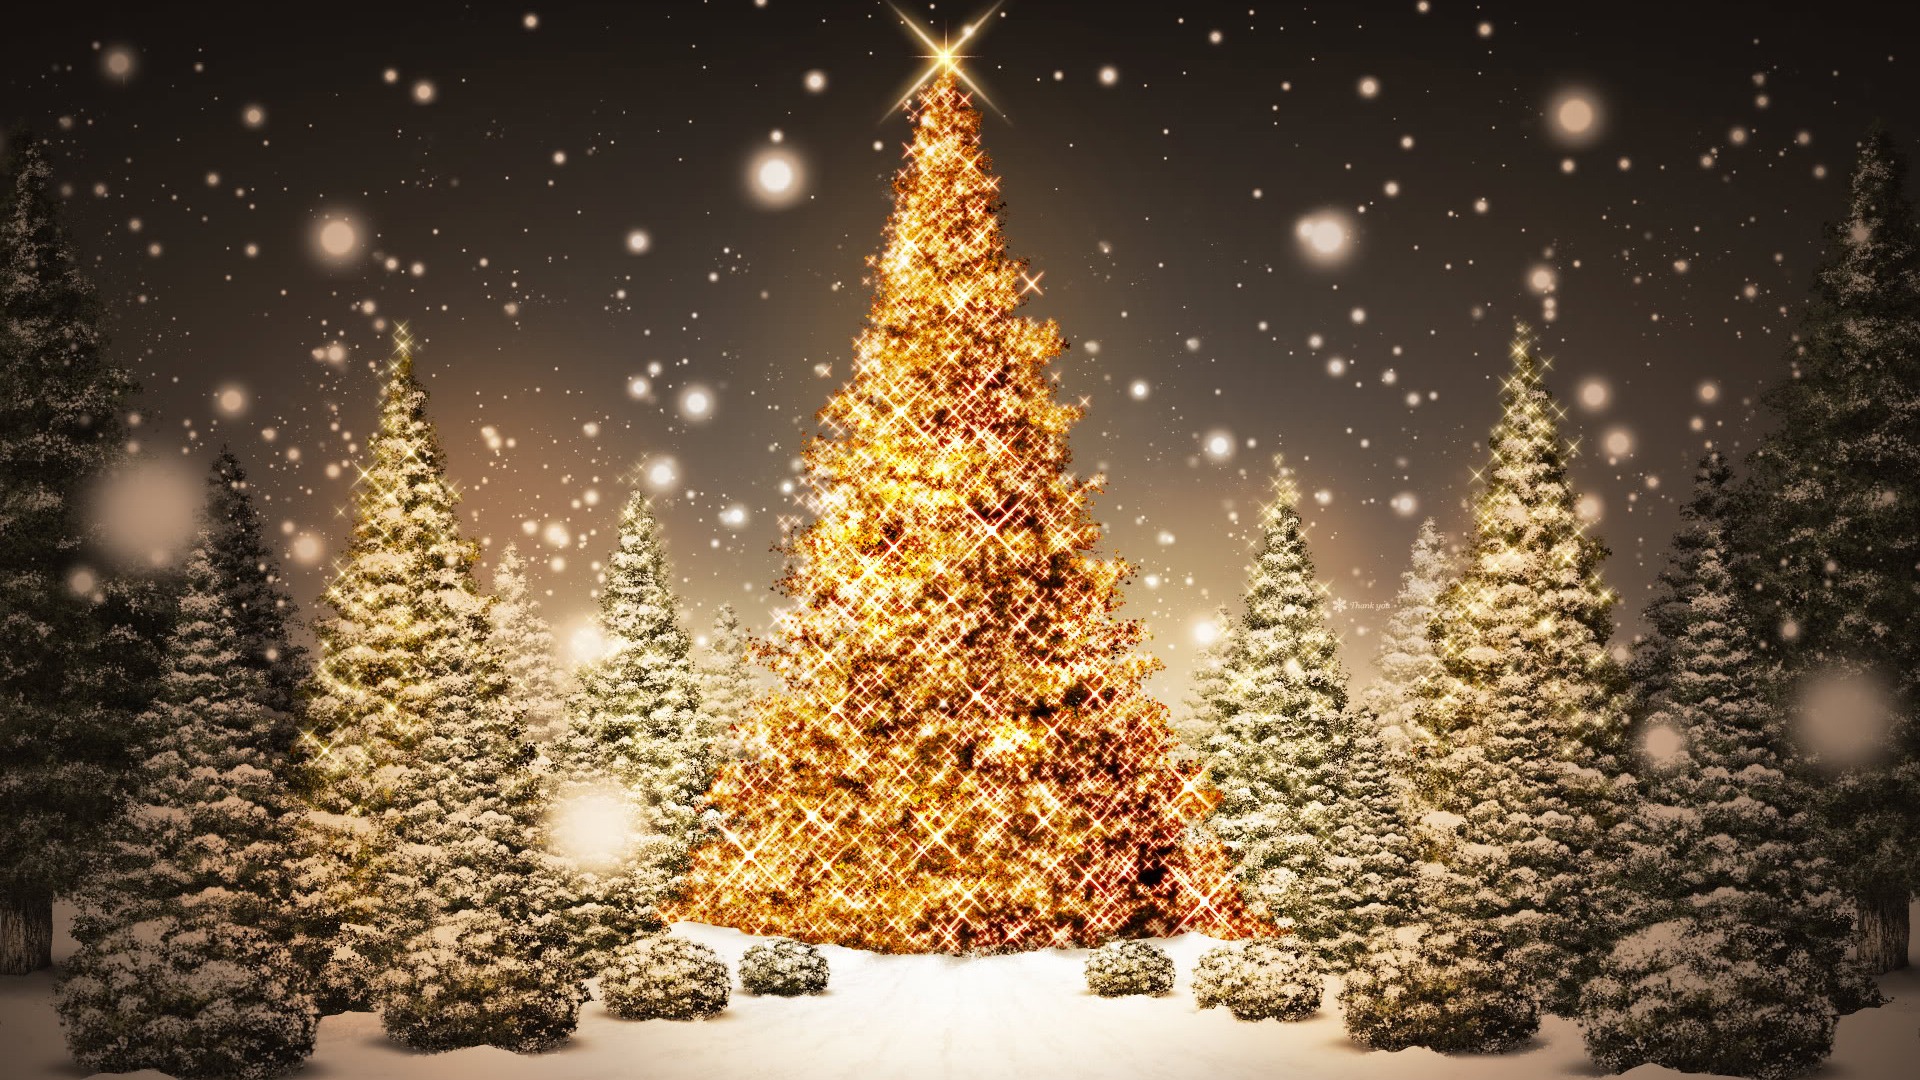 162962 免費下載壁紙 节日, 圣诞节, 圣诞灯饰, 圣诞树, 雪 屏保和圖片